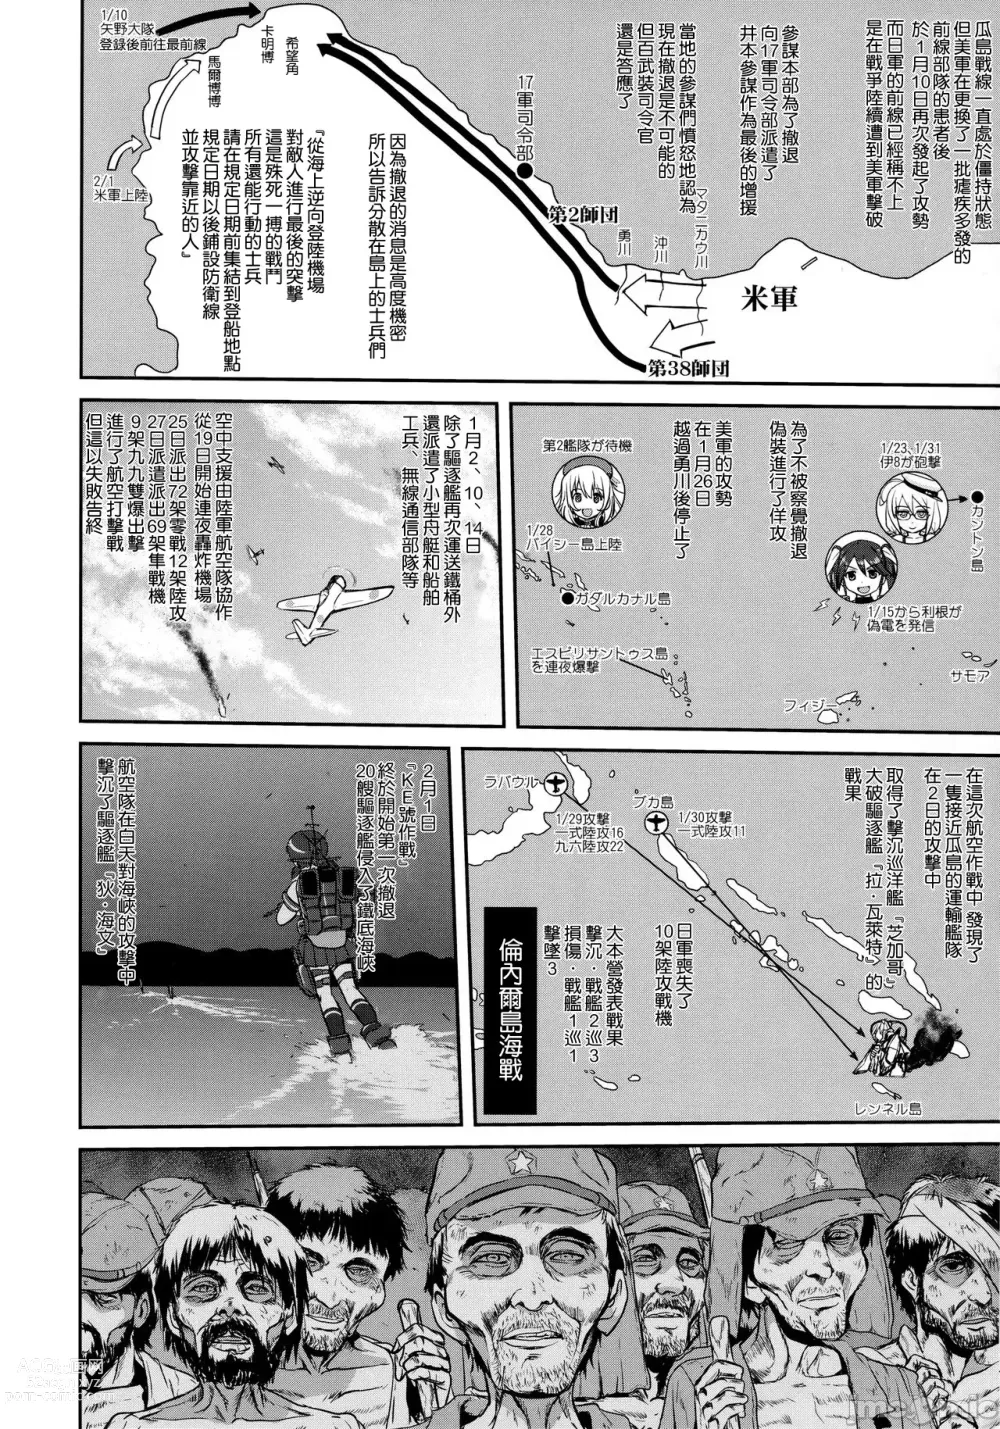 Page 53 of doujinshi Teitoku no Ketsudan - Tetsutei Kaikyou